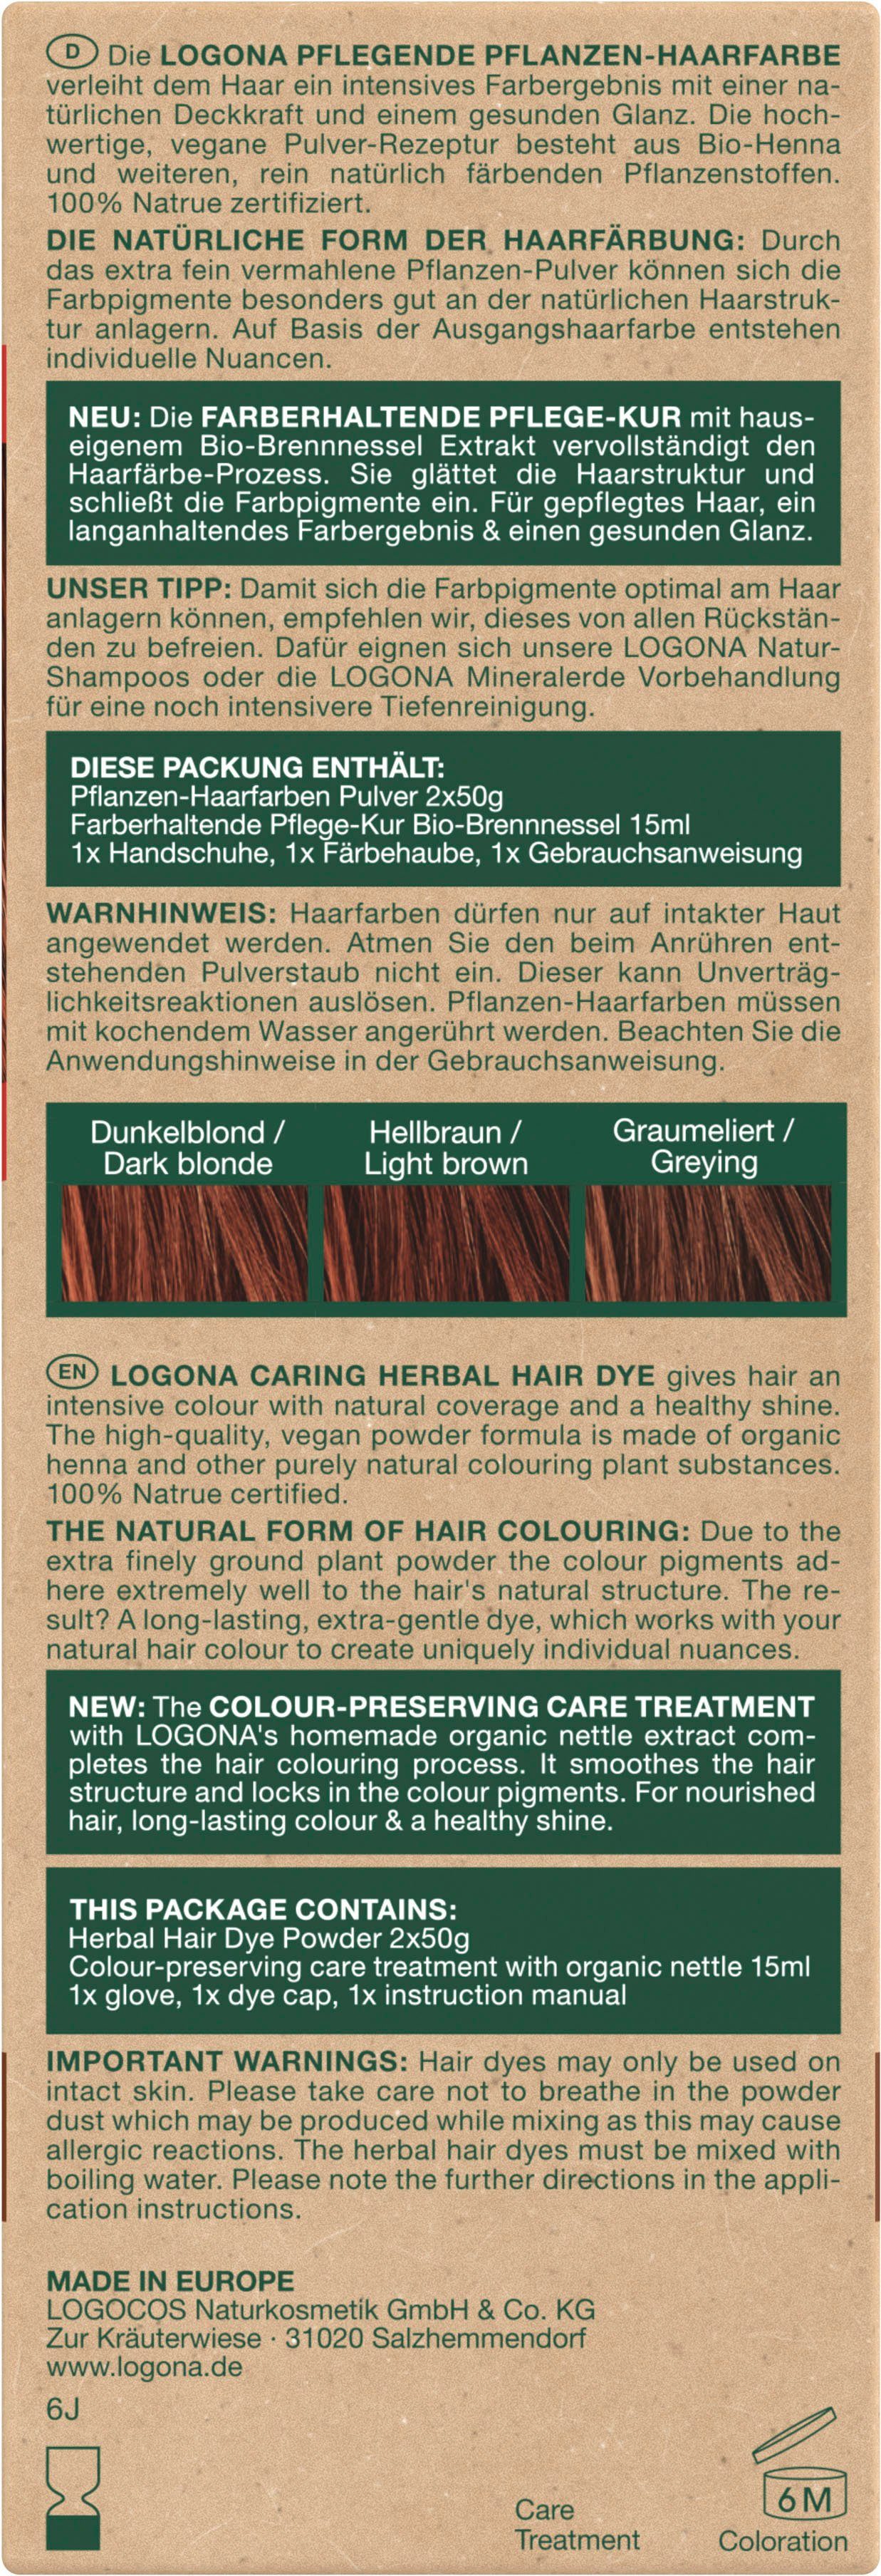 LOGONA Haarfarbe Pflanzen-Haarfarbe 05 Mahagonirot Pulver